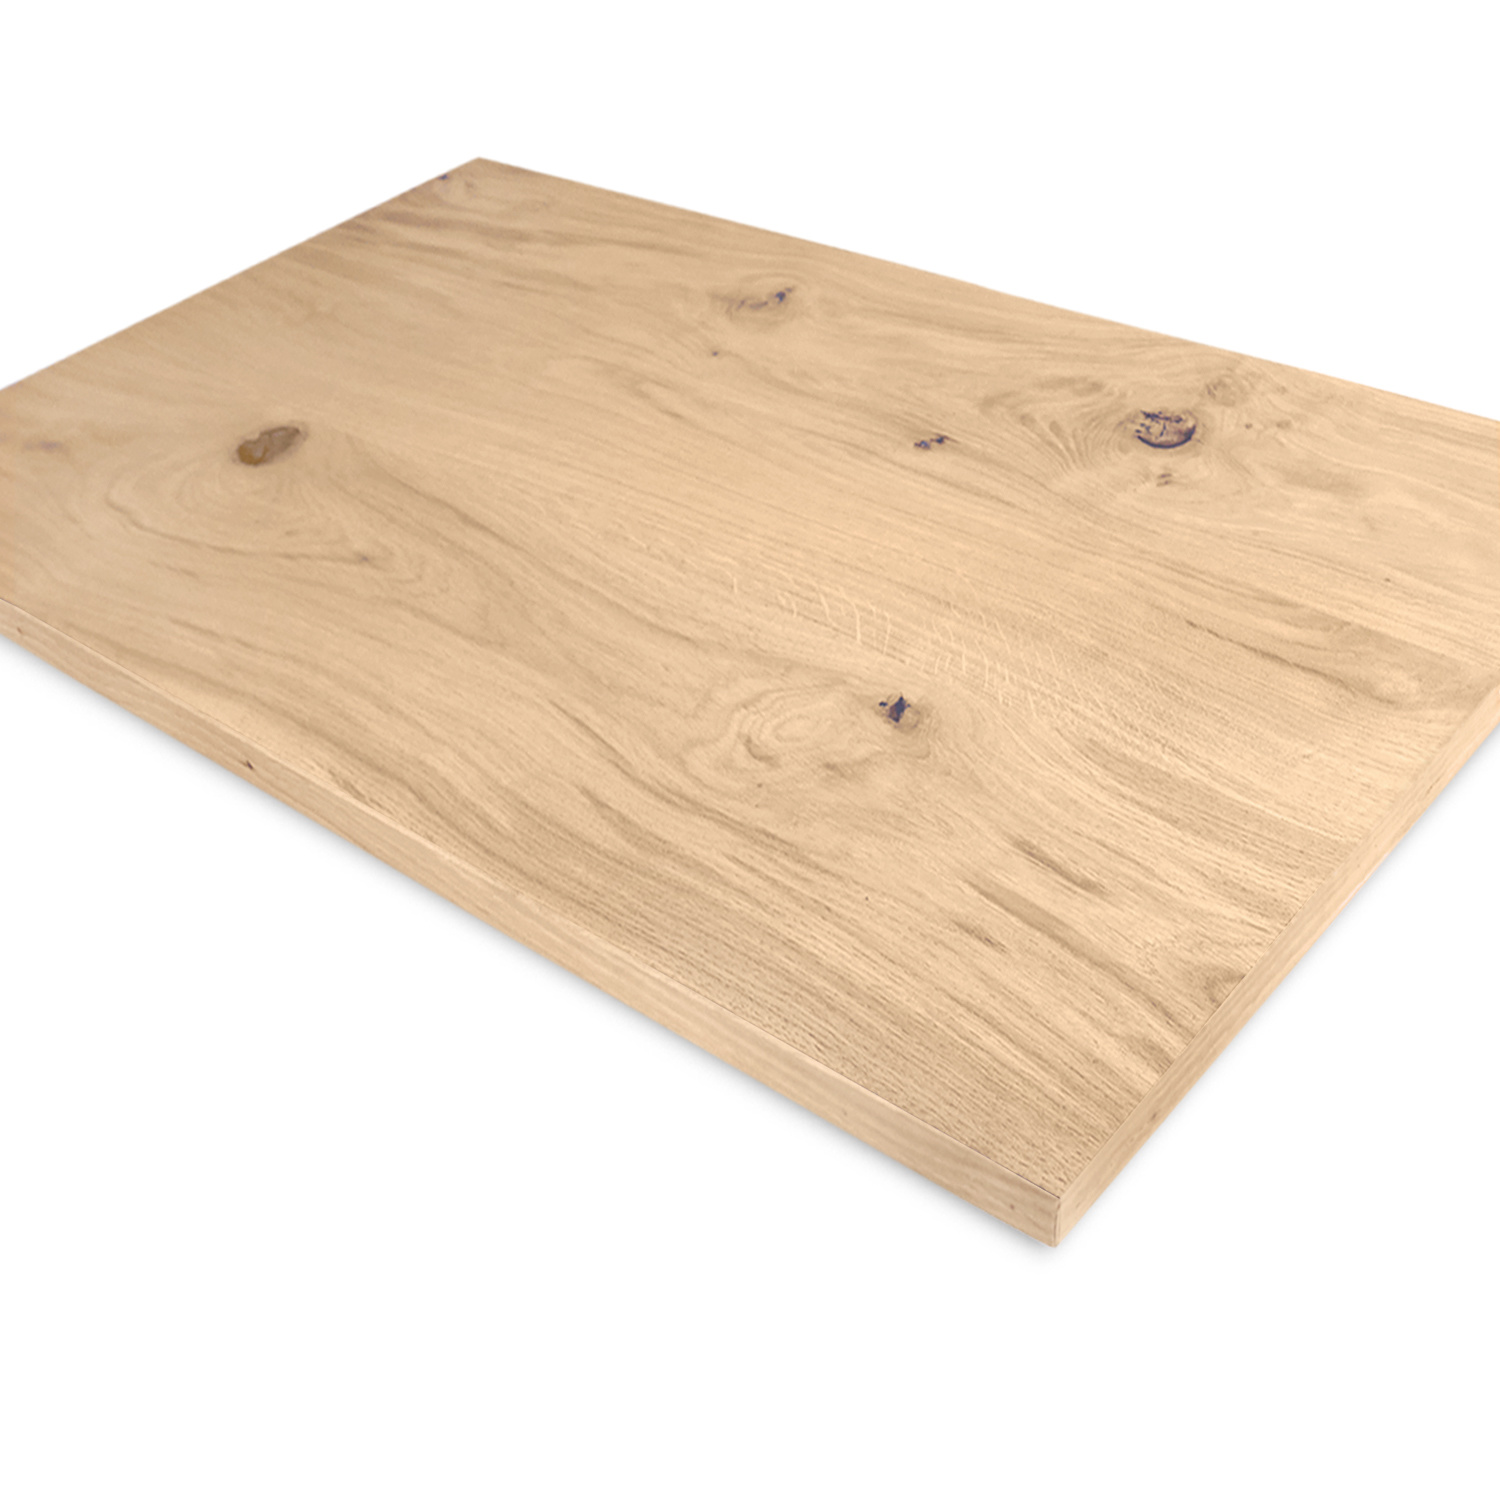  Eiken fineer op maat - 3 cm dik - rustiek Europees eikenhout - eikenfineer plaat / (meubel)paneel